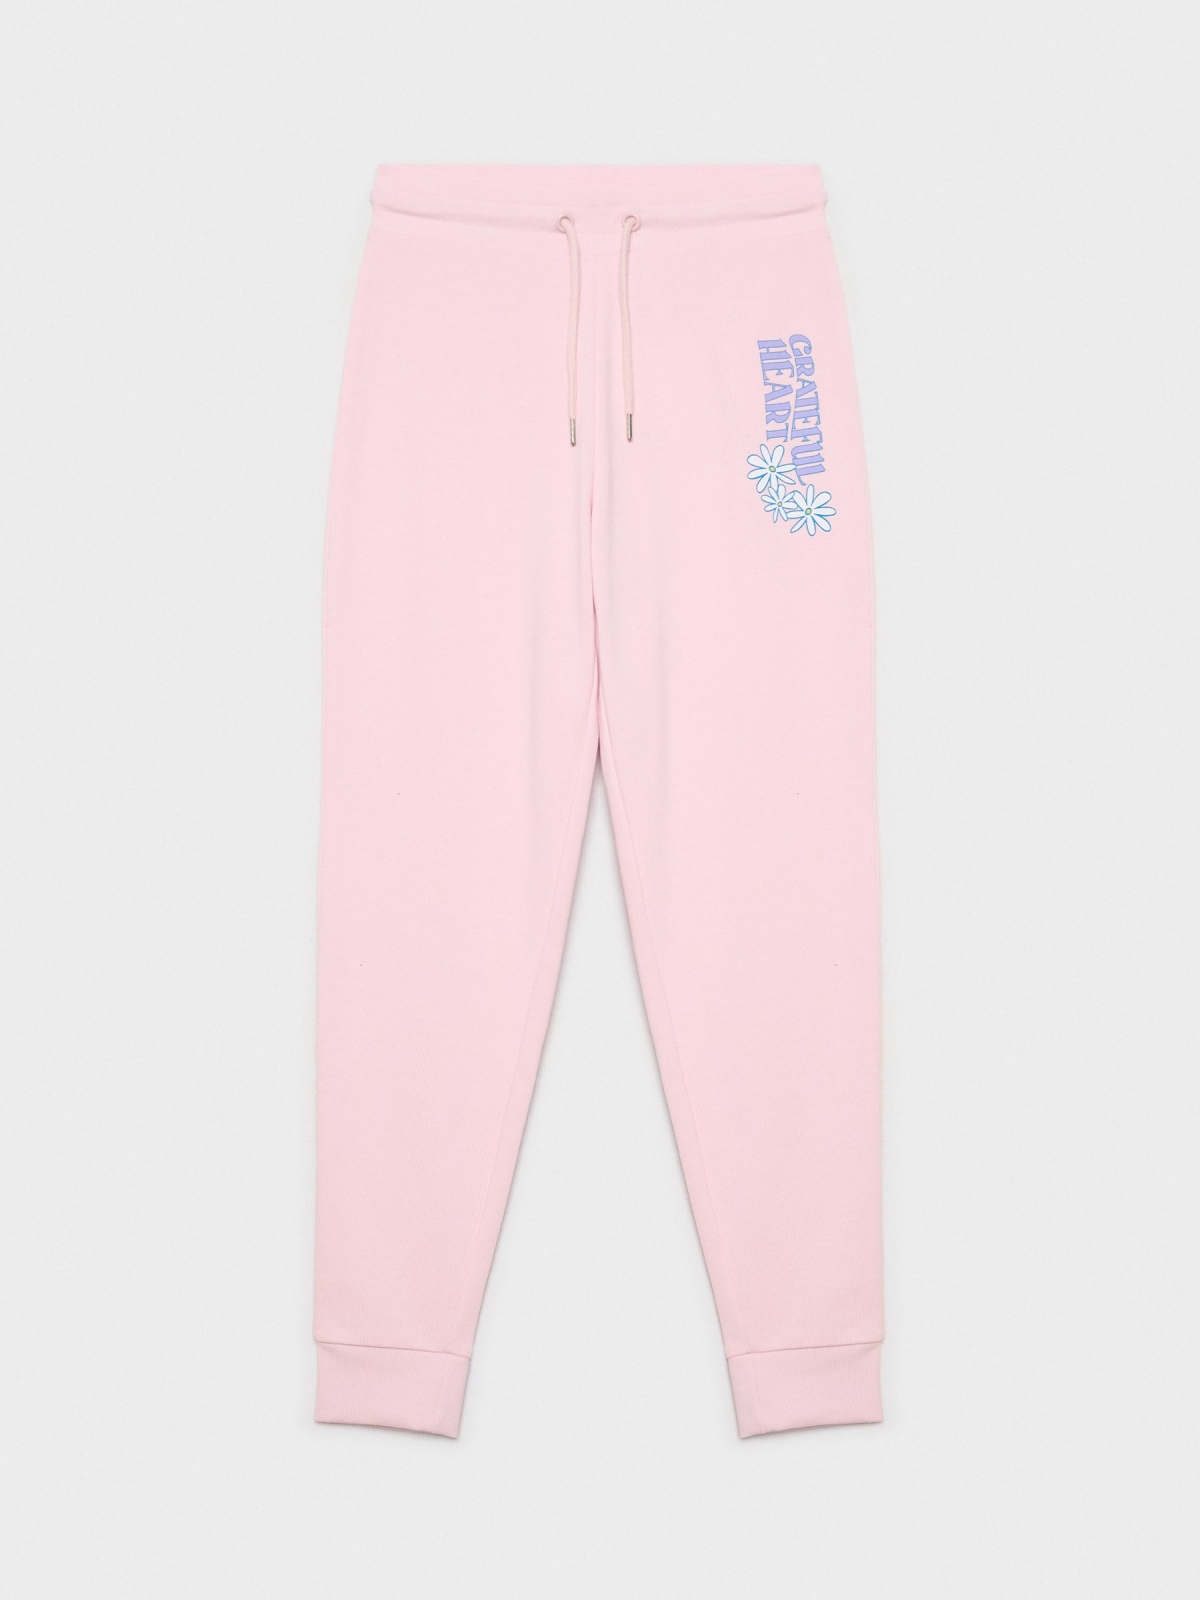  Pantalón jogger rosa estampado rosa claro